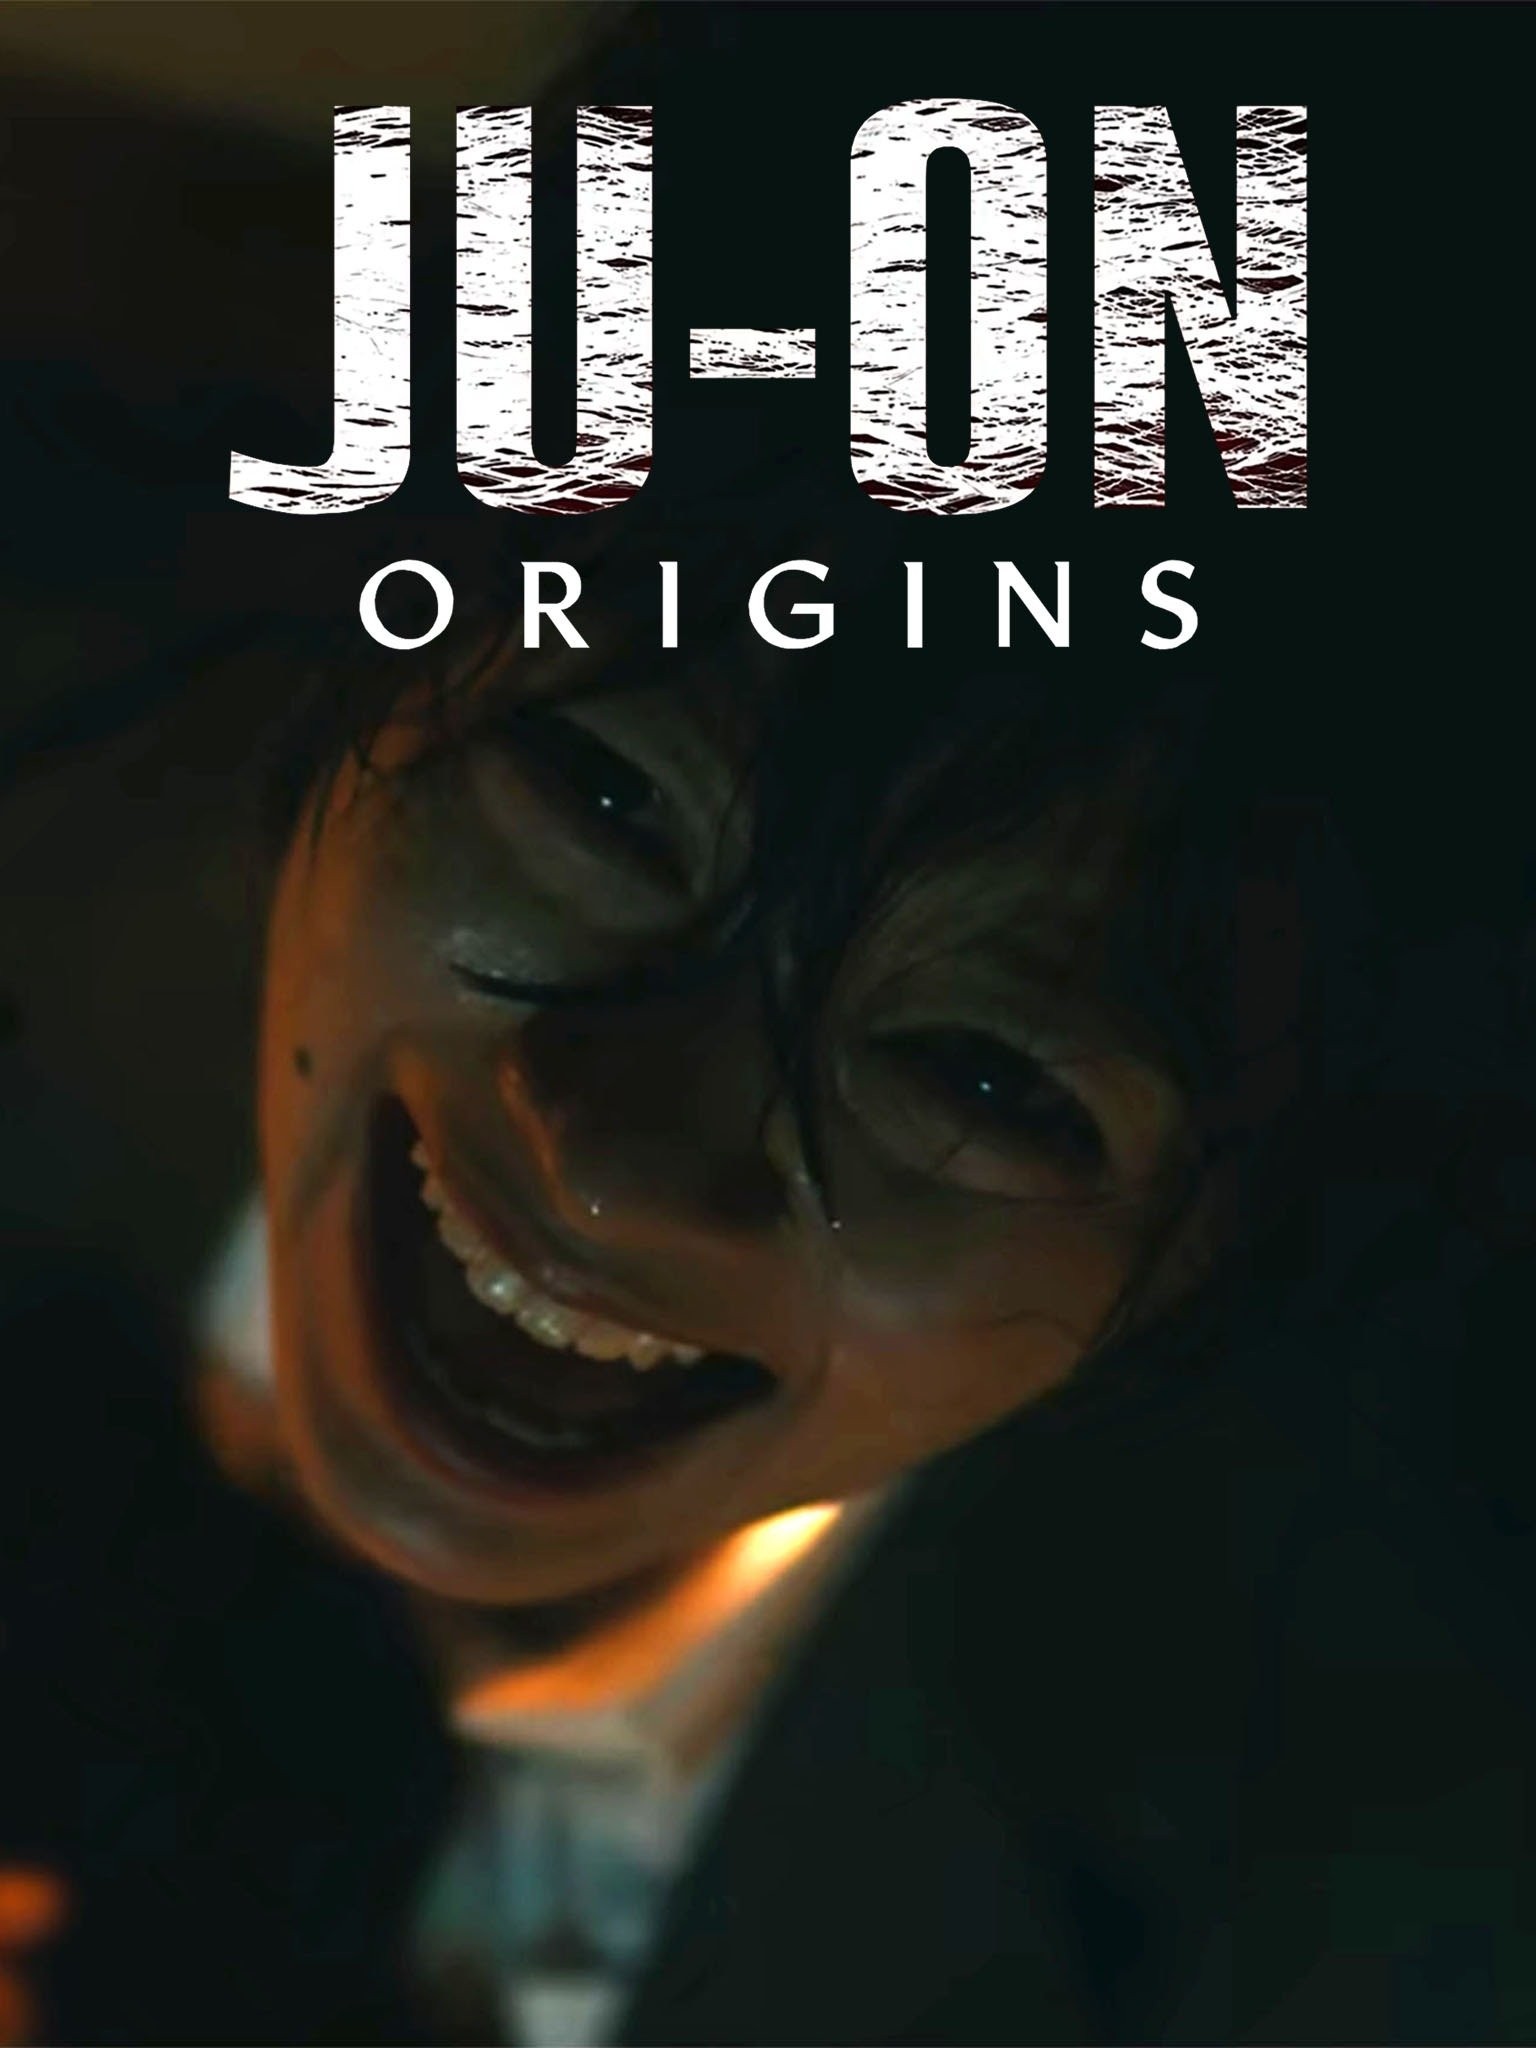 Netflix : La série japonaise d'horreur Ju-On Origins se dévoile